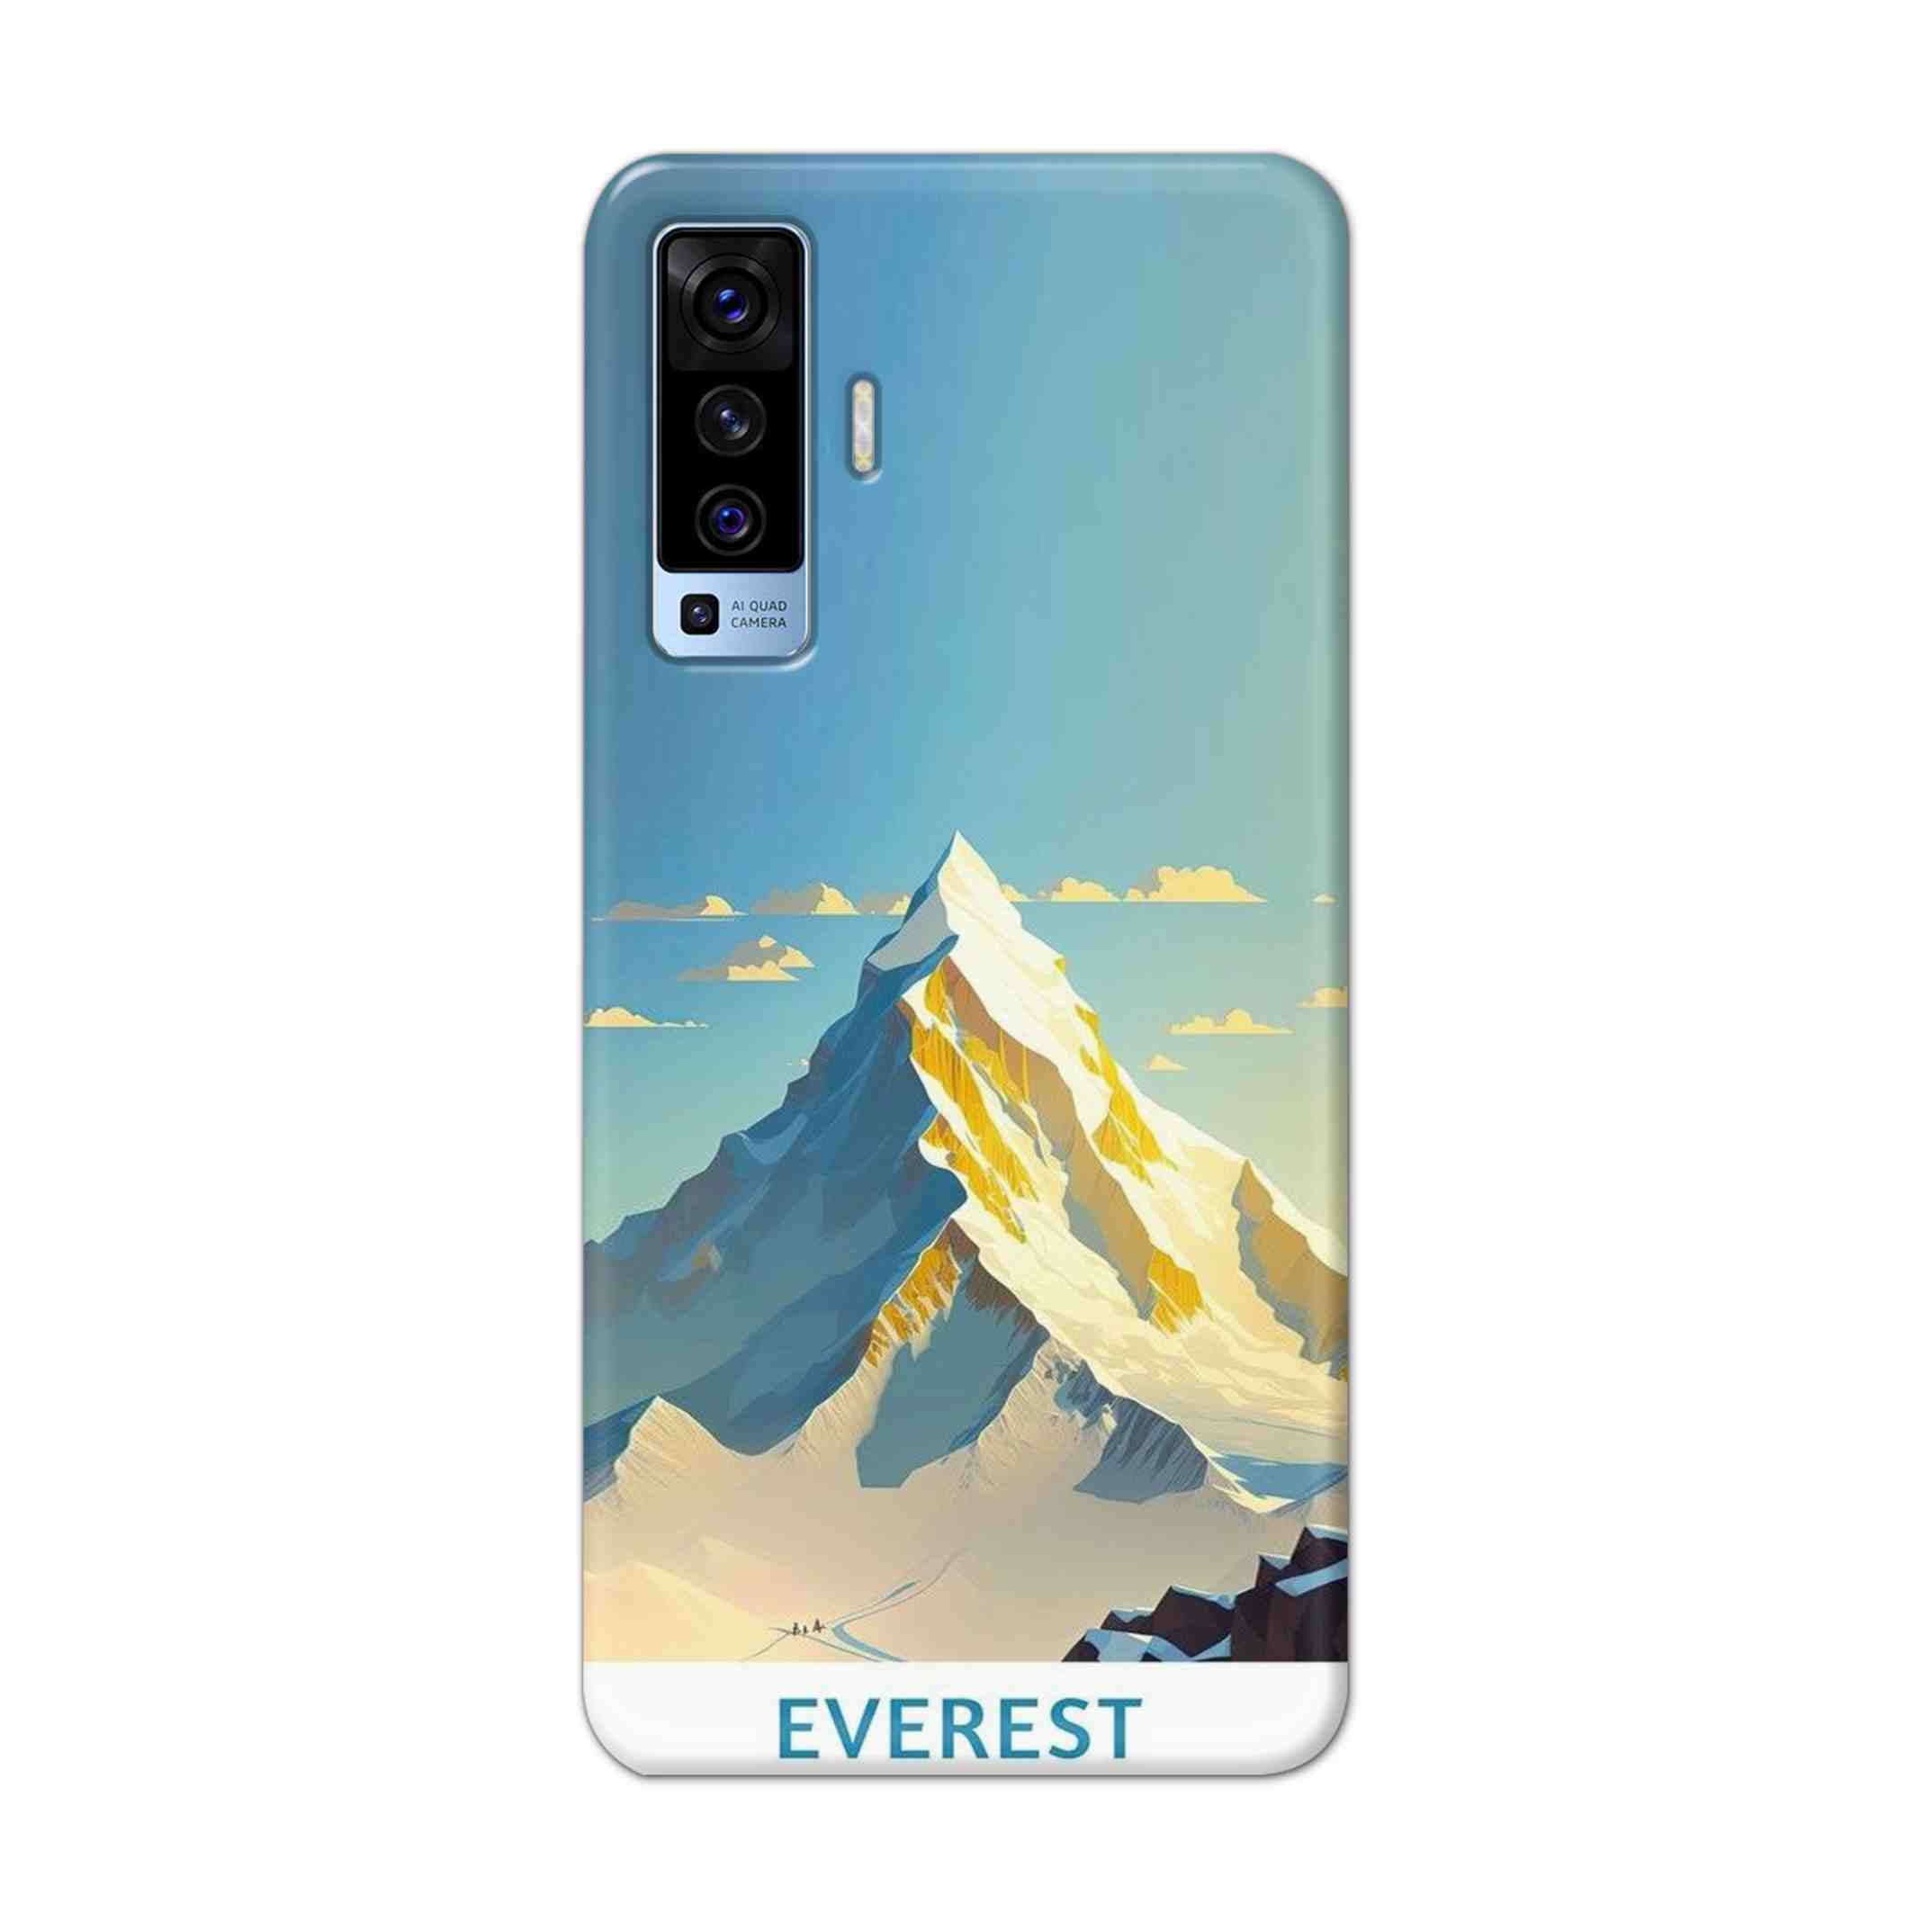 Buy Everest Hard Back Mobile Phone Case Cover For Vivo X50 Online